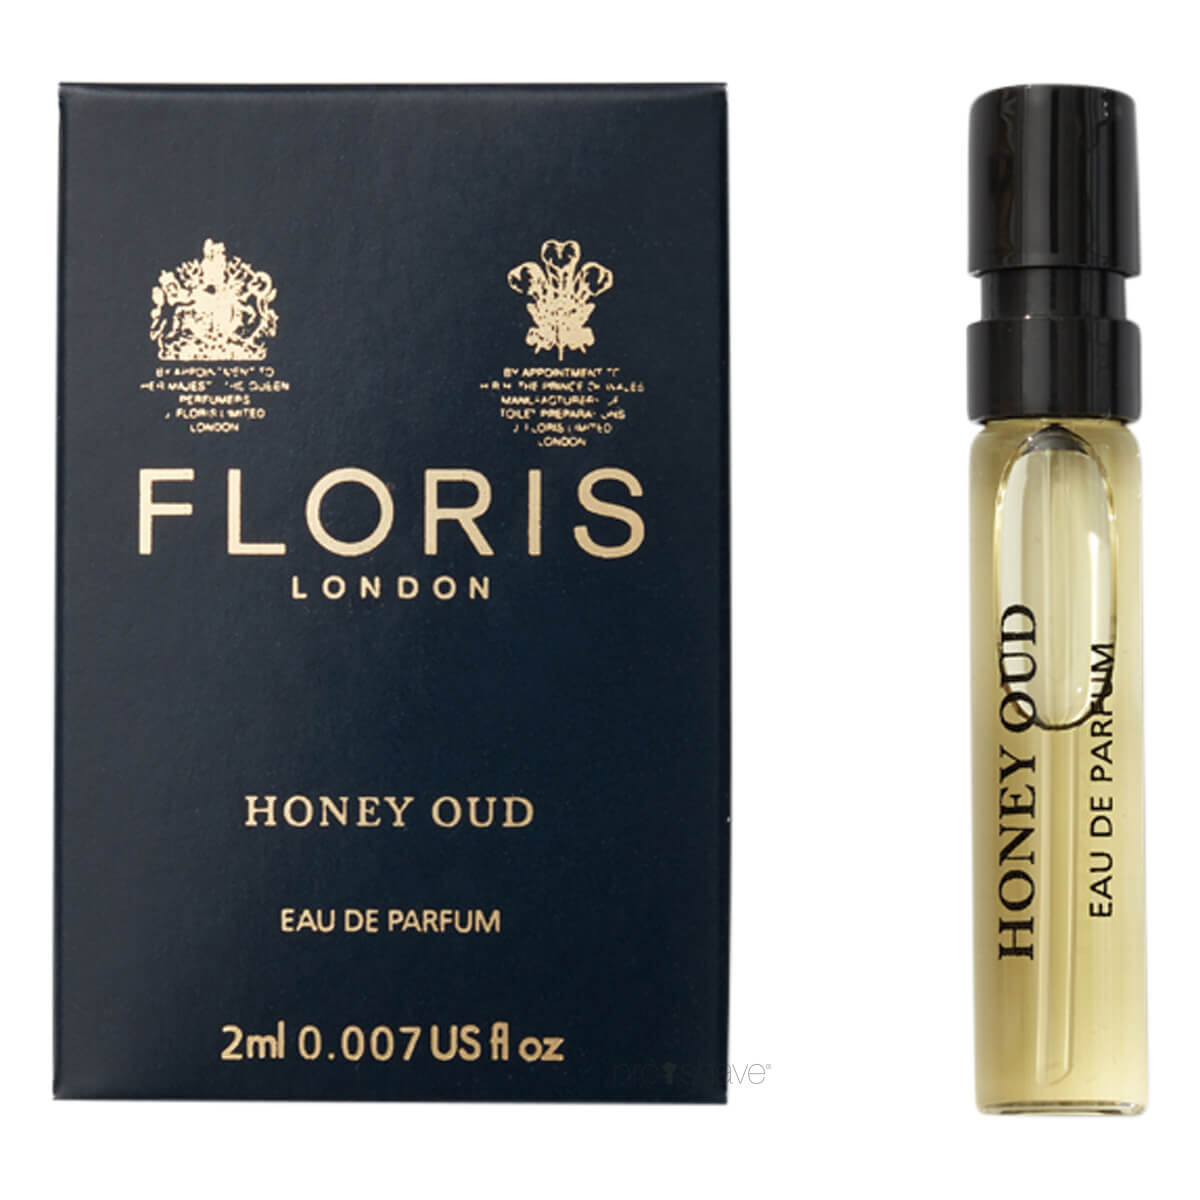 Billede af Floris Honey Oud, Eau de Parfum, DUFTPRØVE, 2 ml.